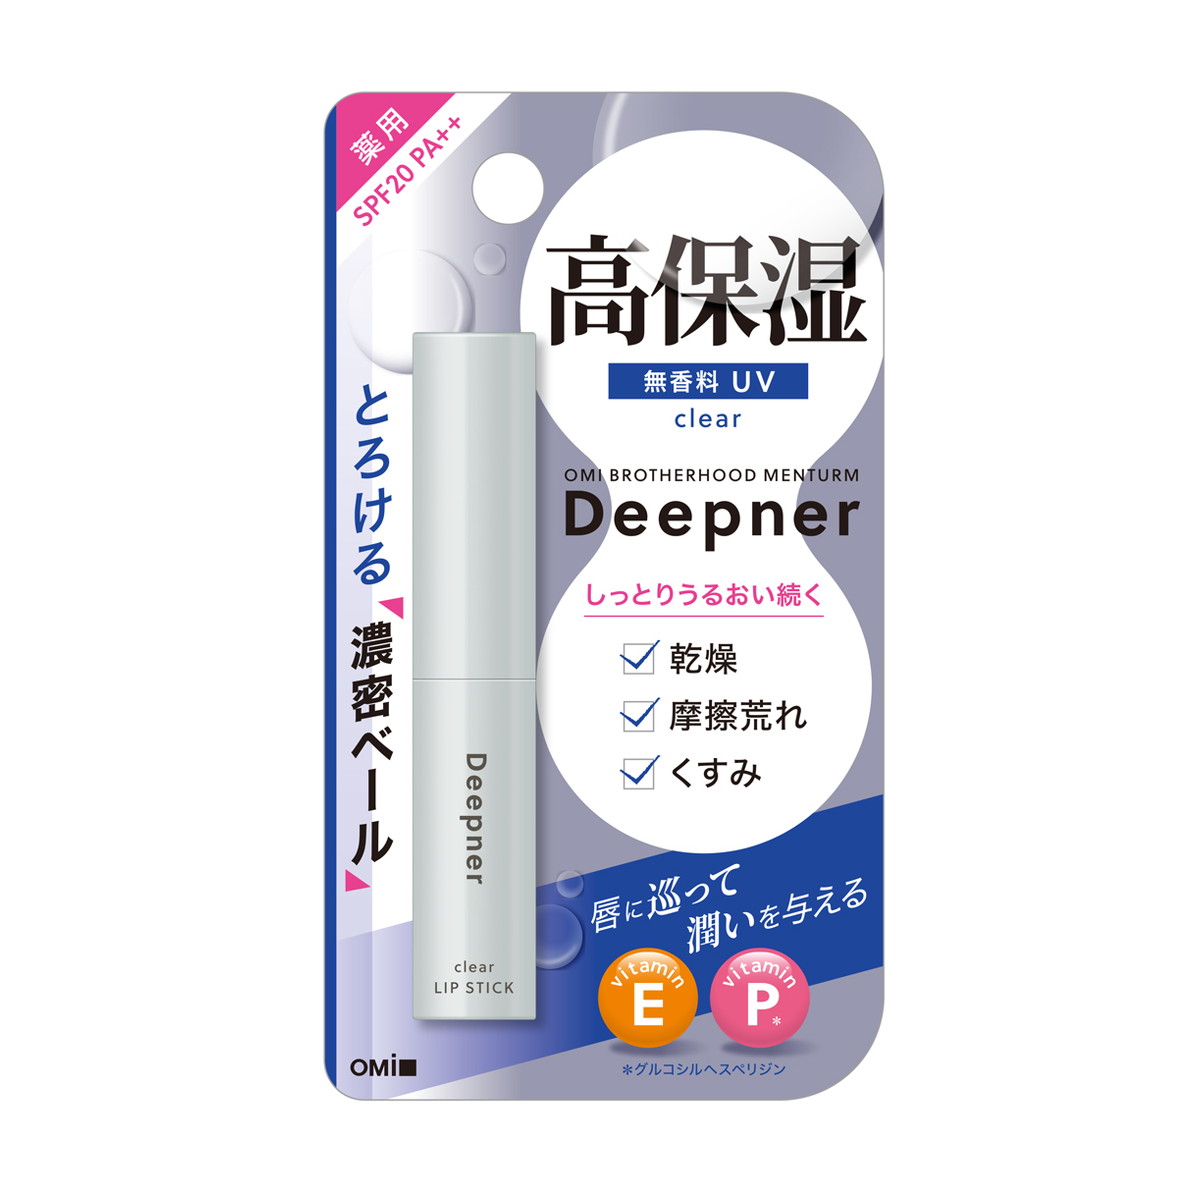 近江兄弟社 メンターム ディープナー 薬用 リップ 無香料 UV 2.3g